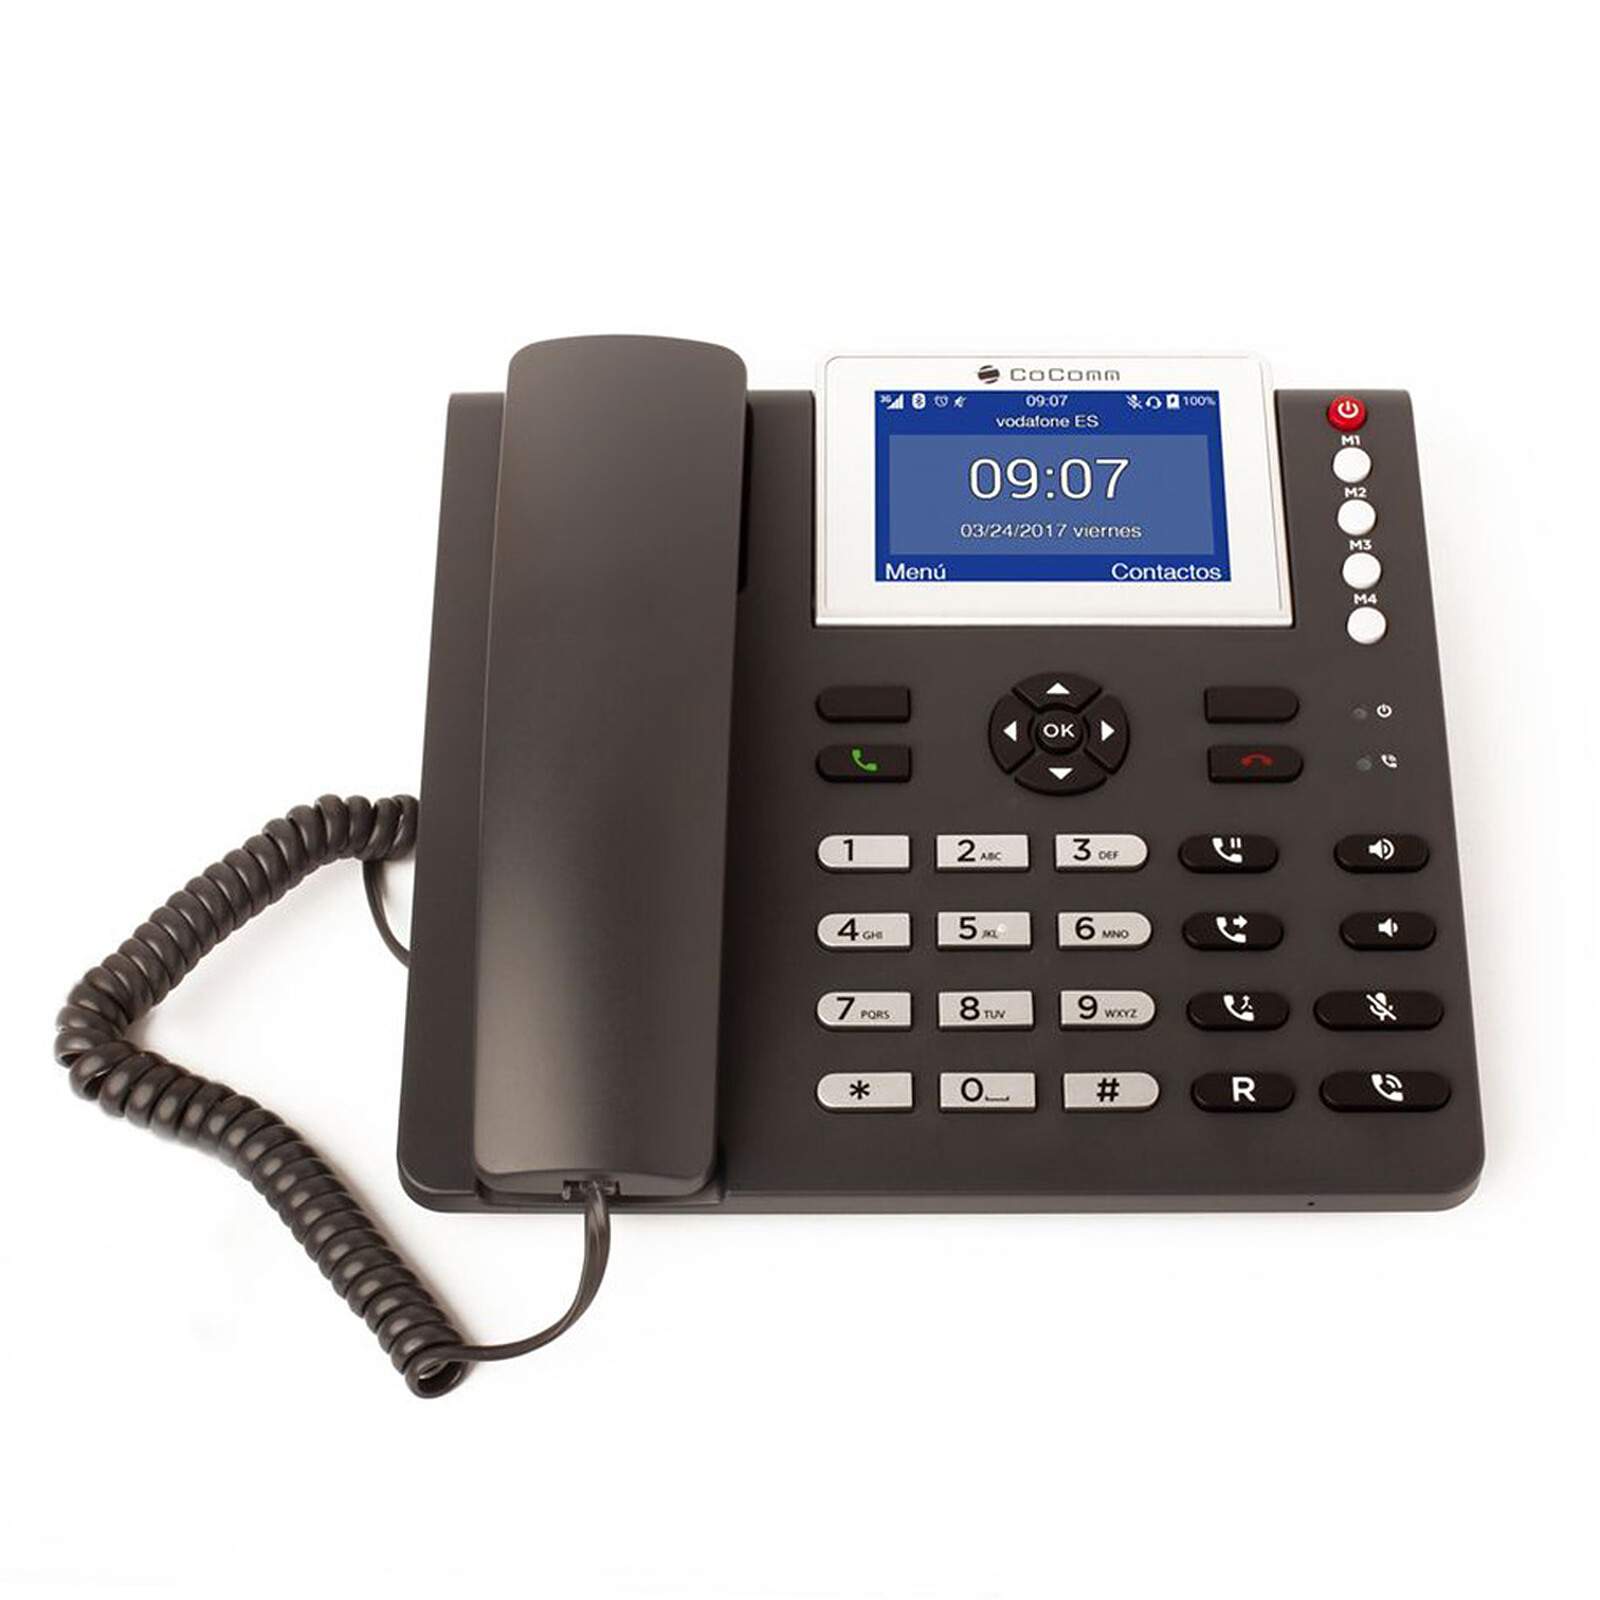 CoComm F740 - Téléphone filaire - Garantie 3 ans LDLC